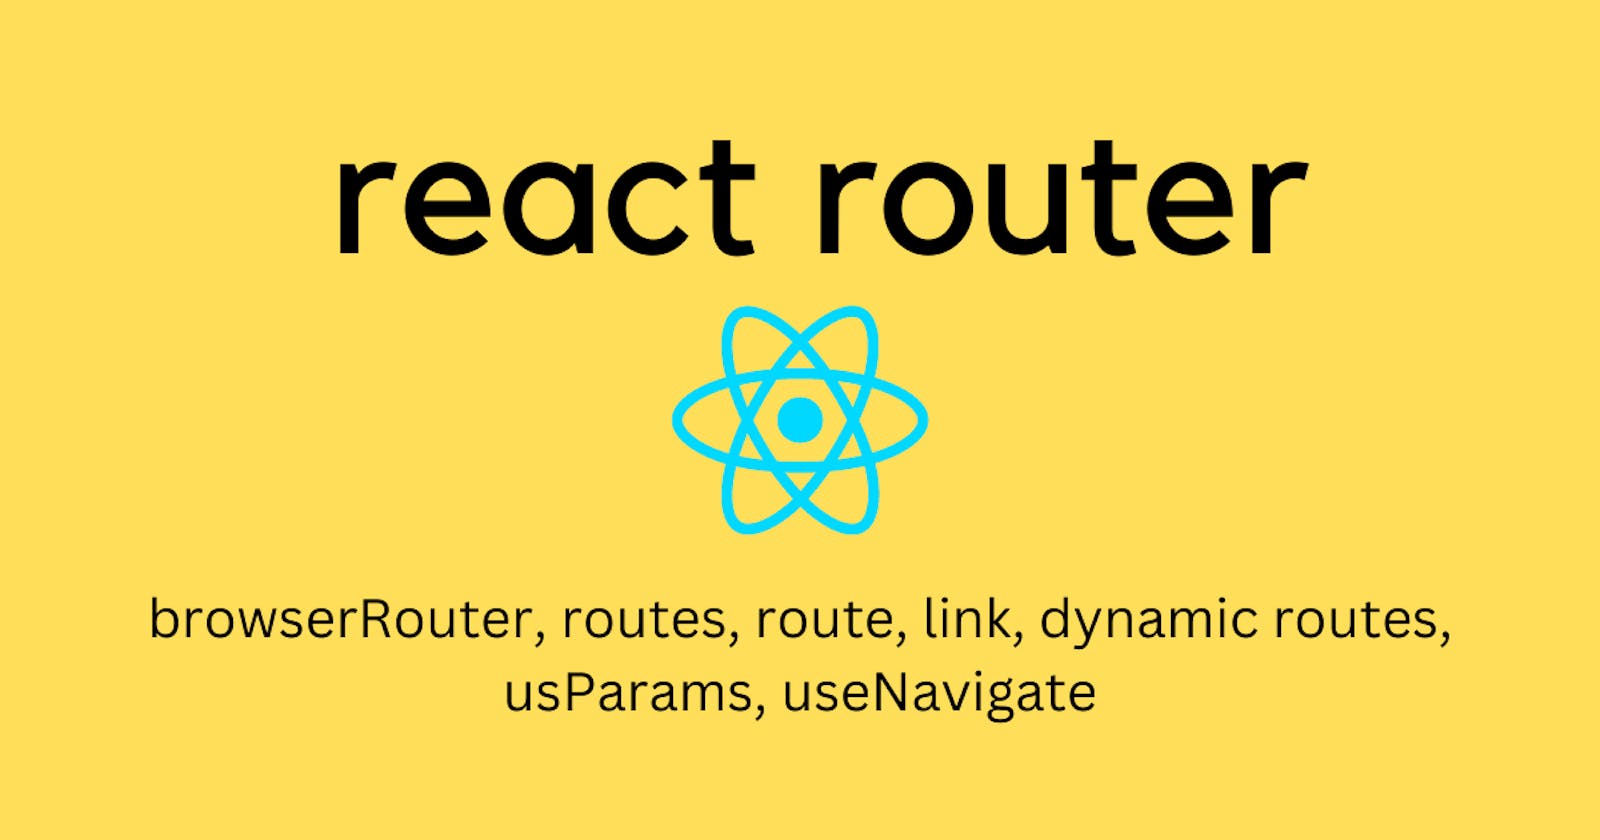 Adding react router to a react app